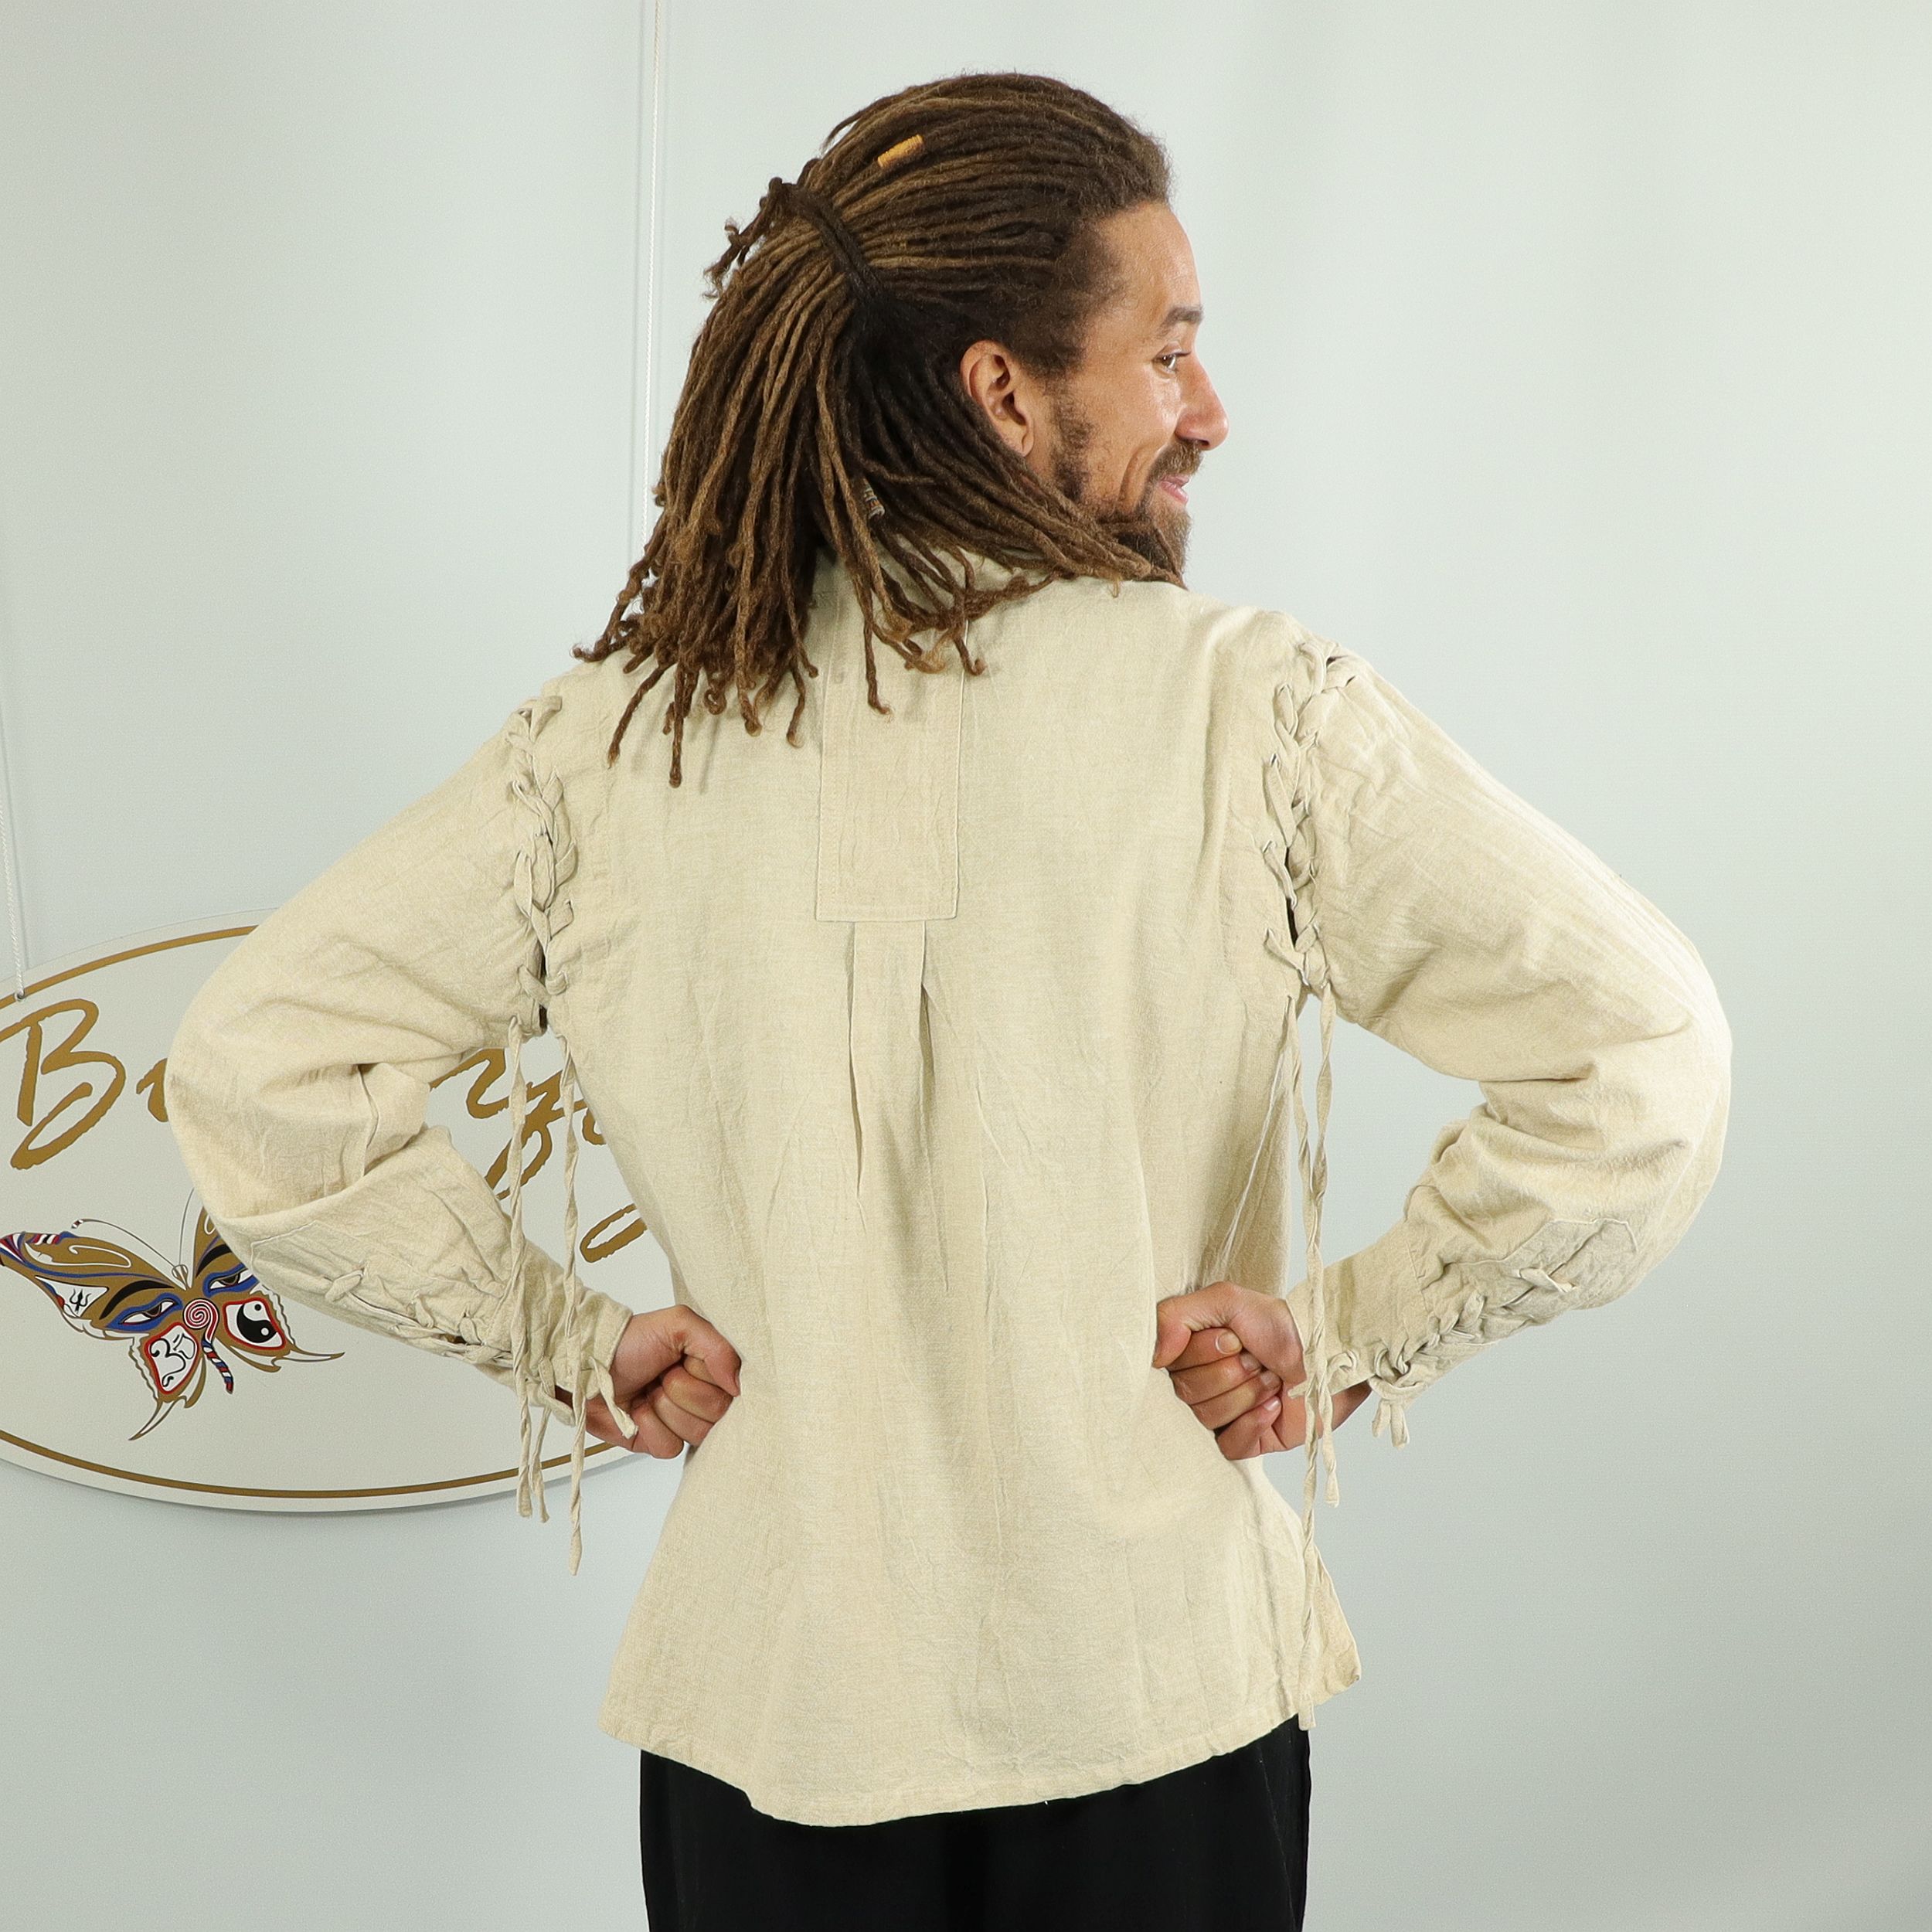 Mittelalterliches Hemd - 100% Baumwolle - Dein historisches Ritterhemd - mit Schnürung an Kragen und Ärmeln - mit Nesteln für Langarm oder ärmellos - Fair gehandelt aus Nepal